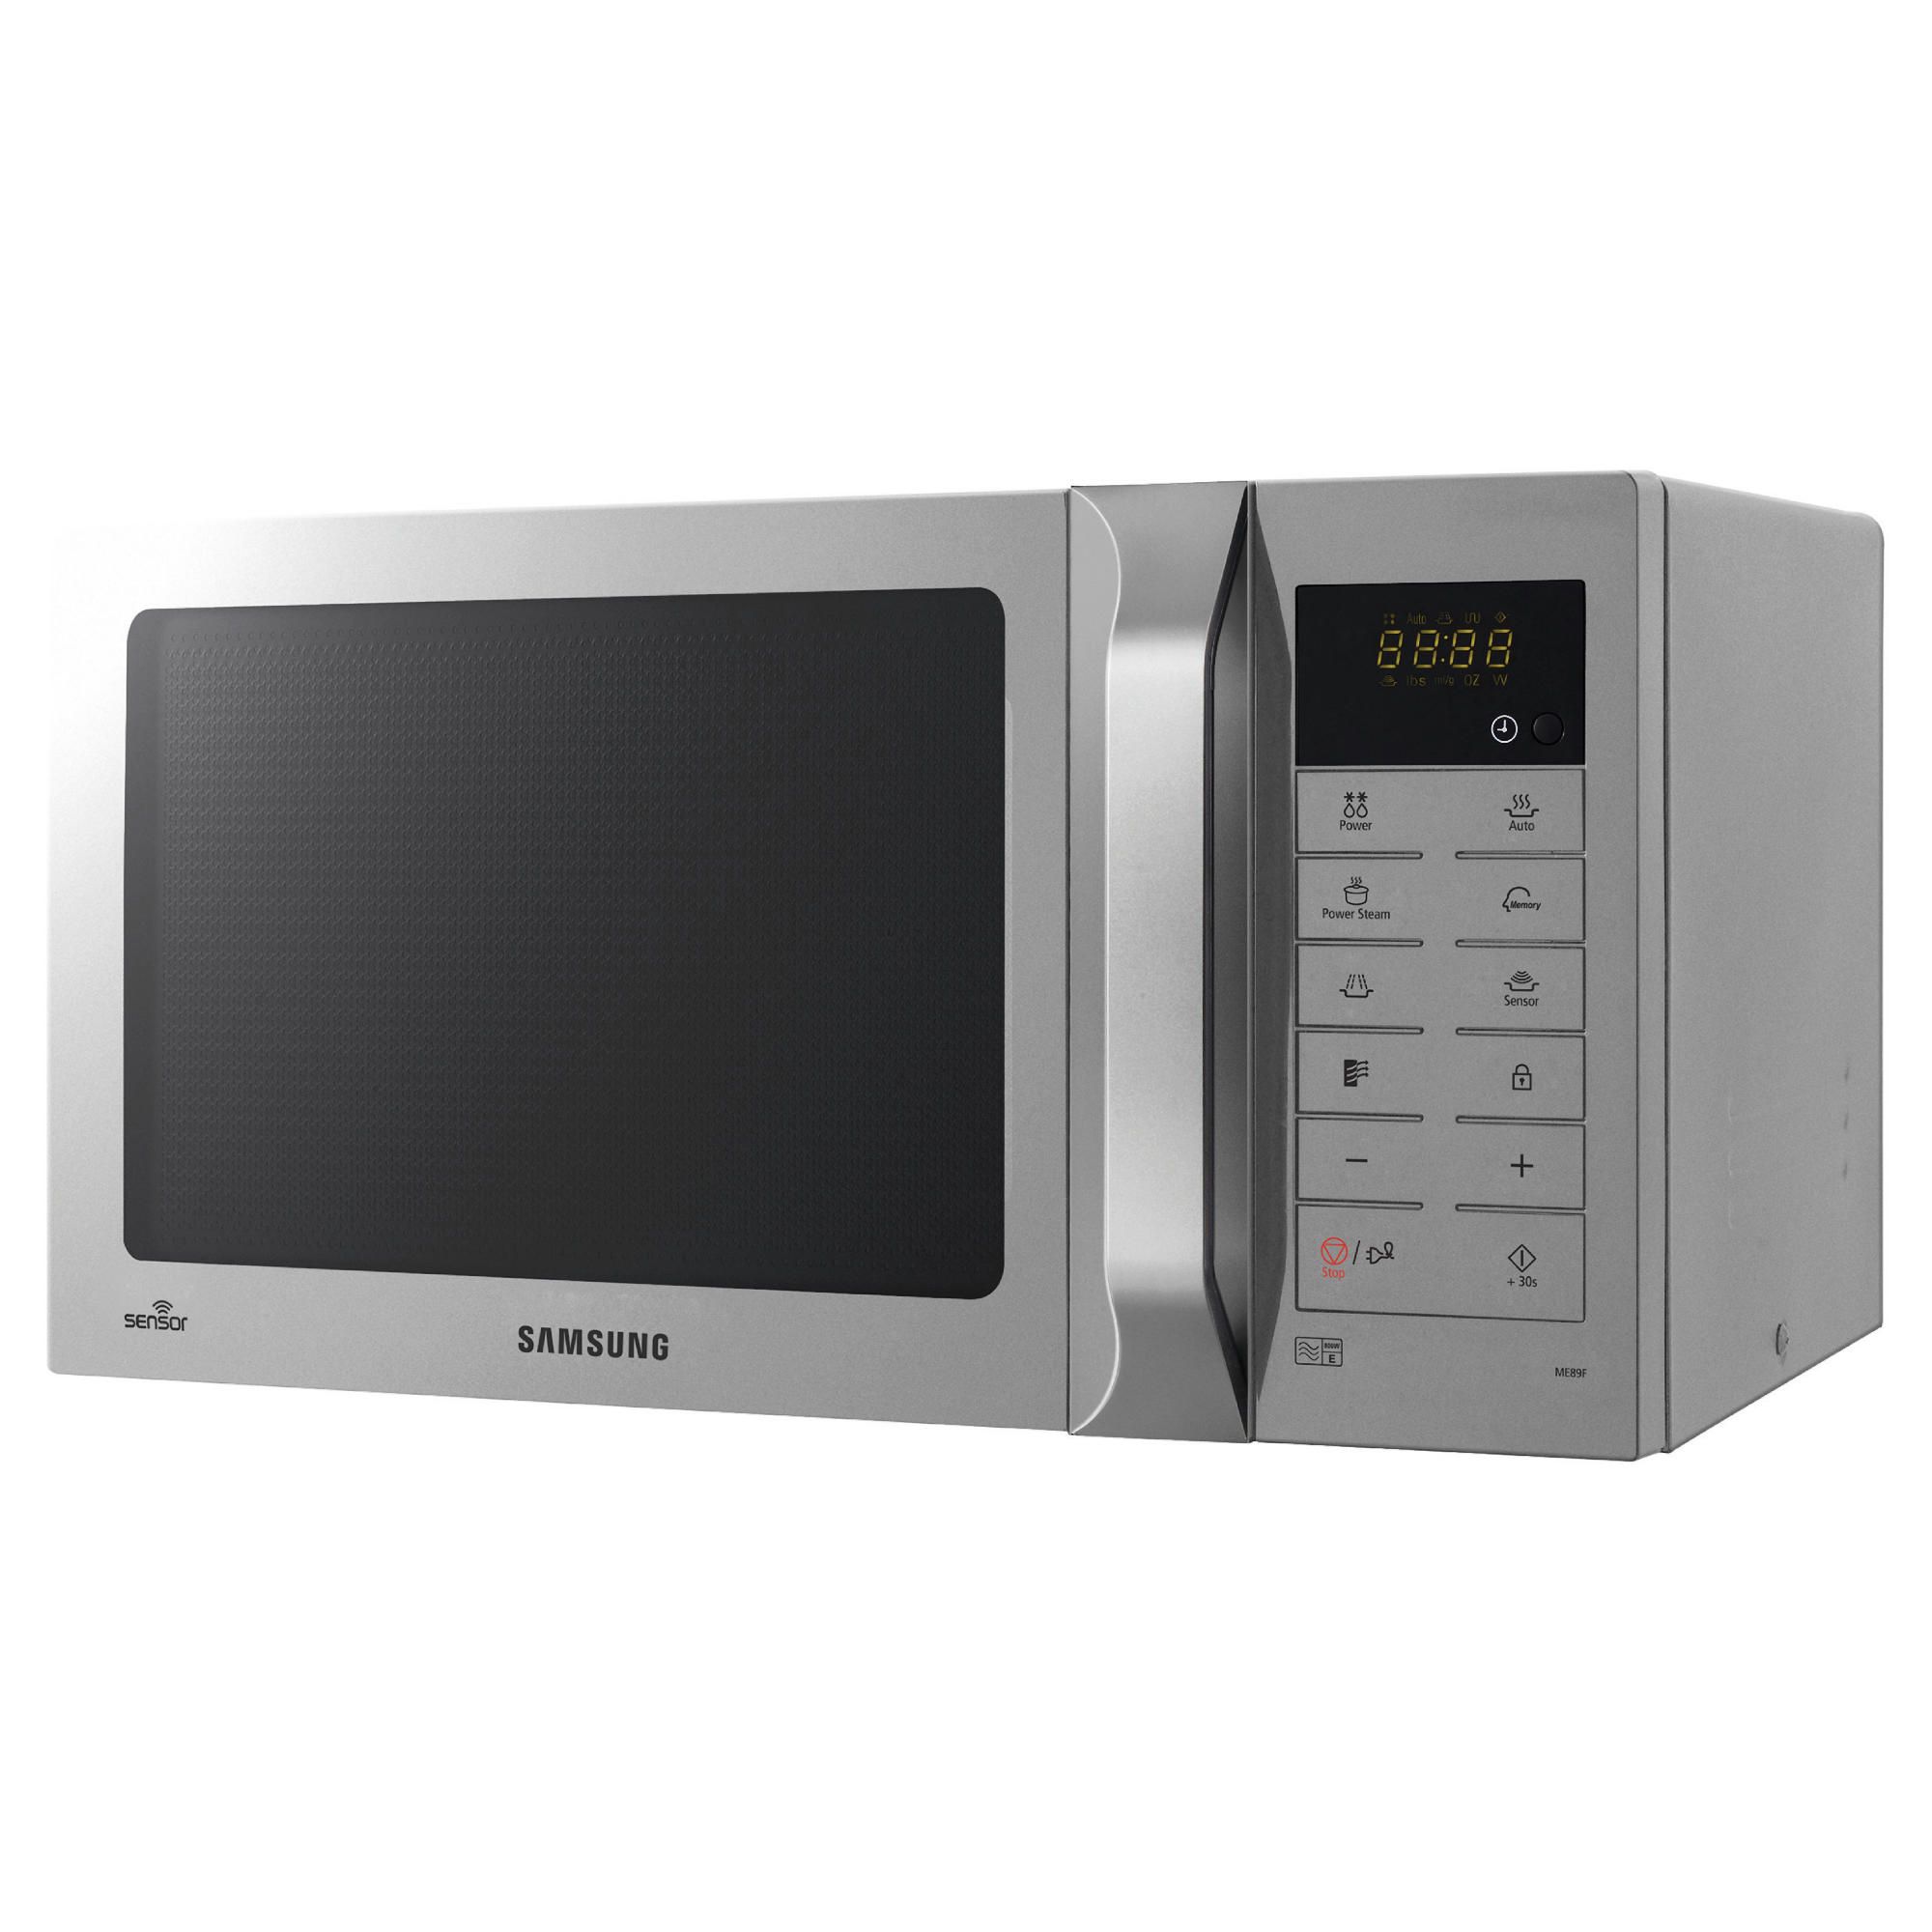 Unique Microwave | 2000 x 2000 · 175 kB · jpeg